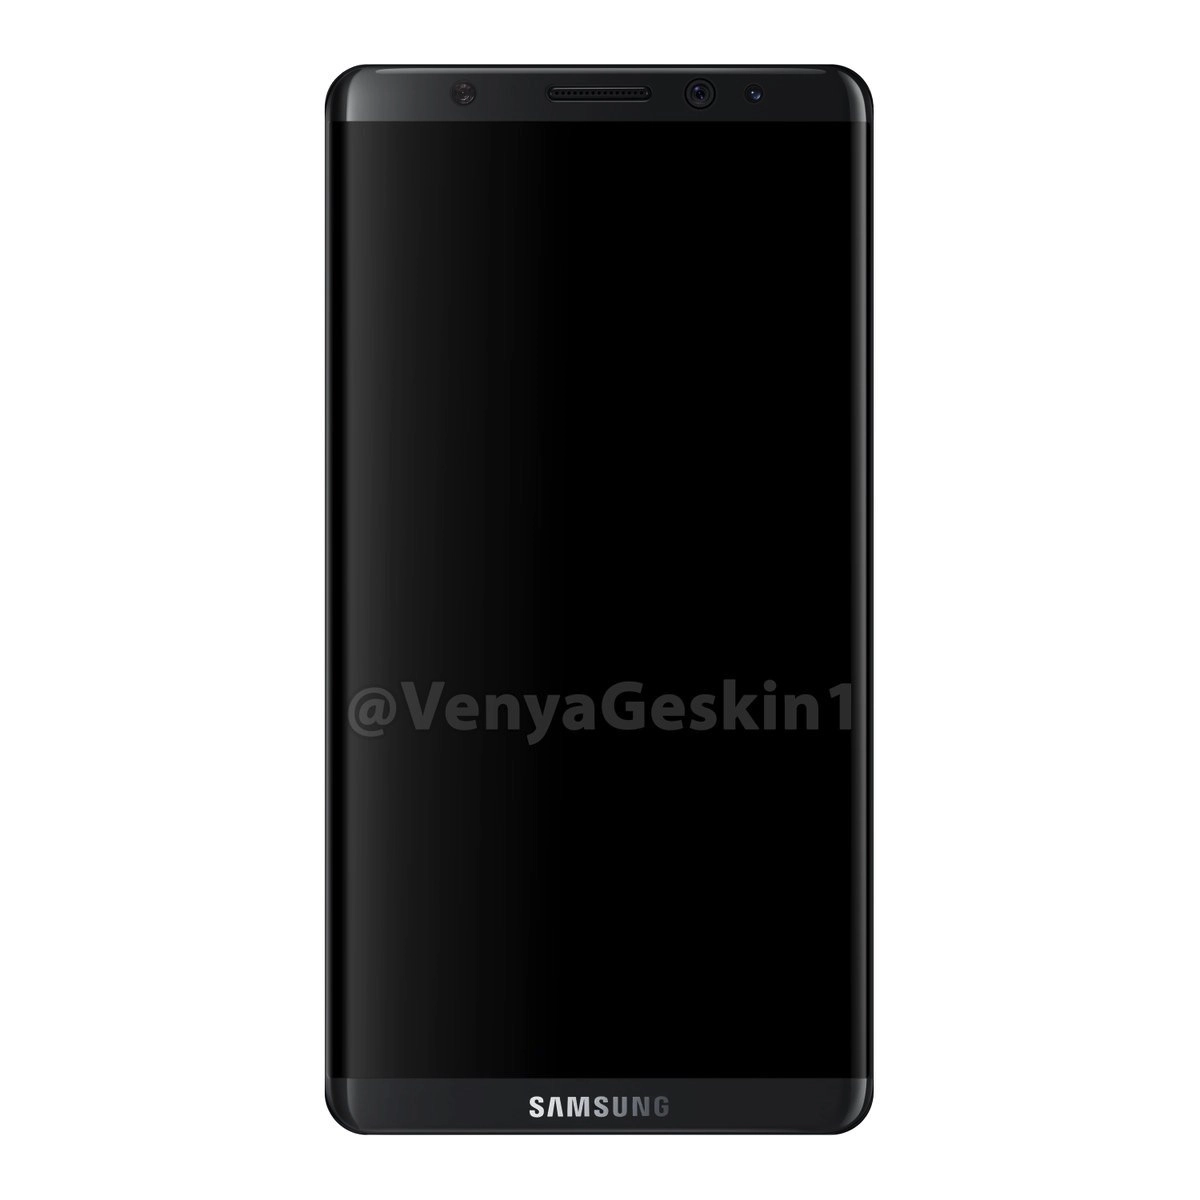 Samsung-Galaxy-S8-002-1